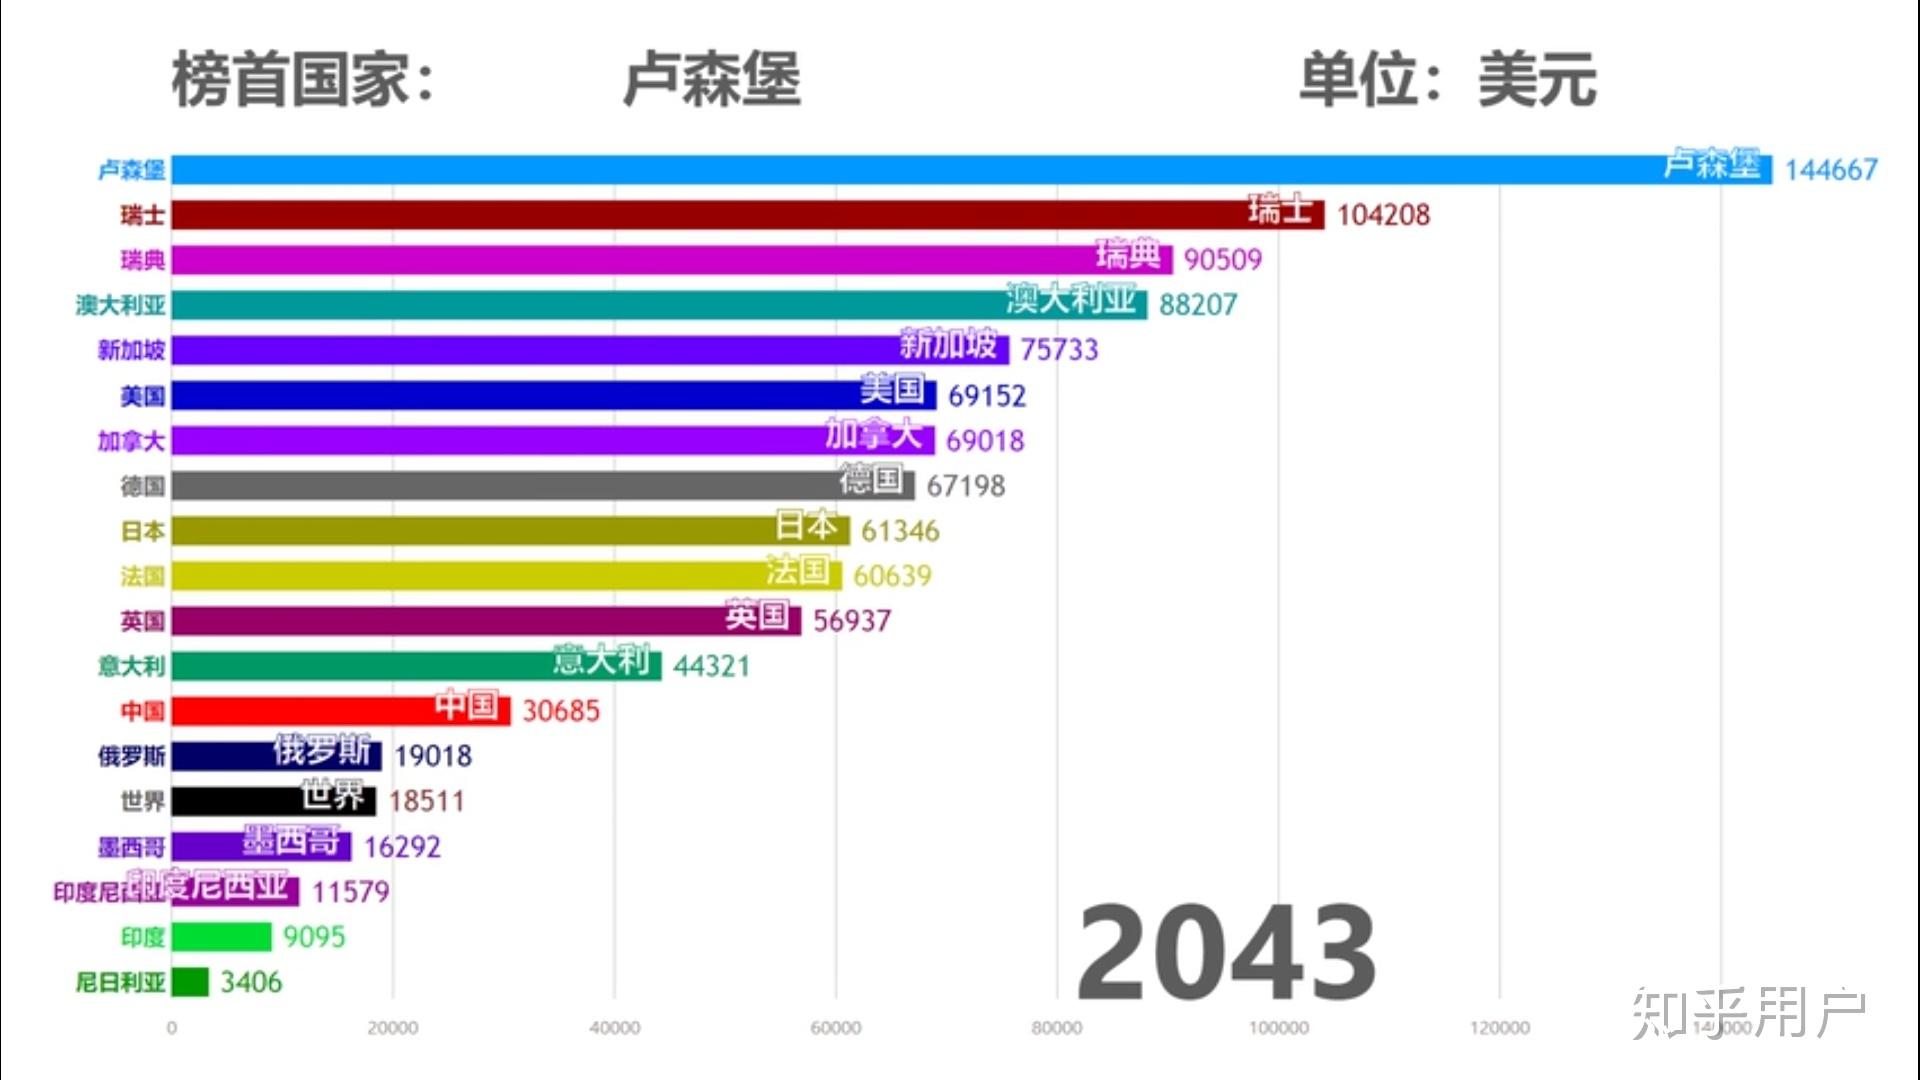 中国人均 GDP 什么时候能超过日本?